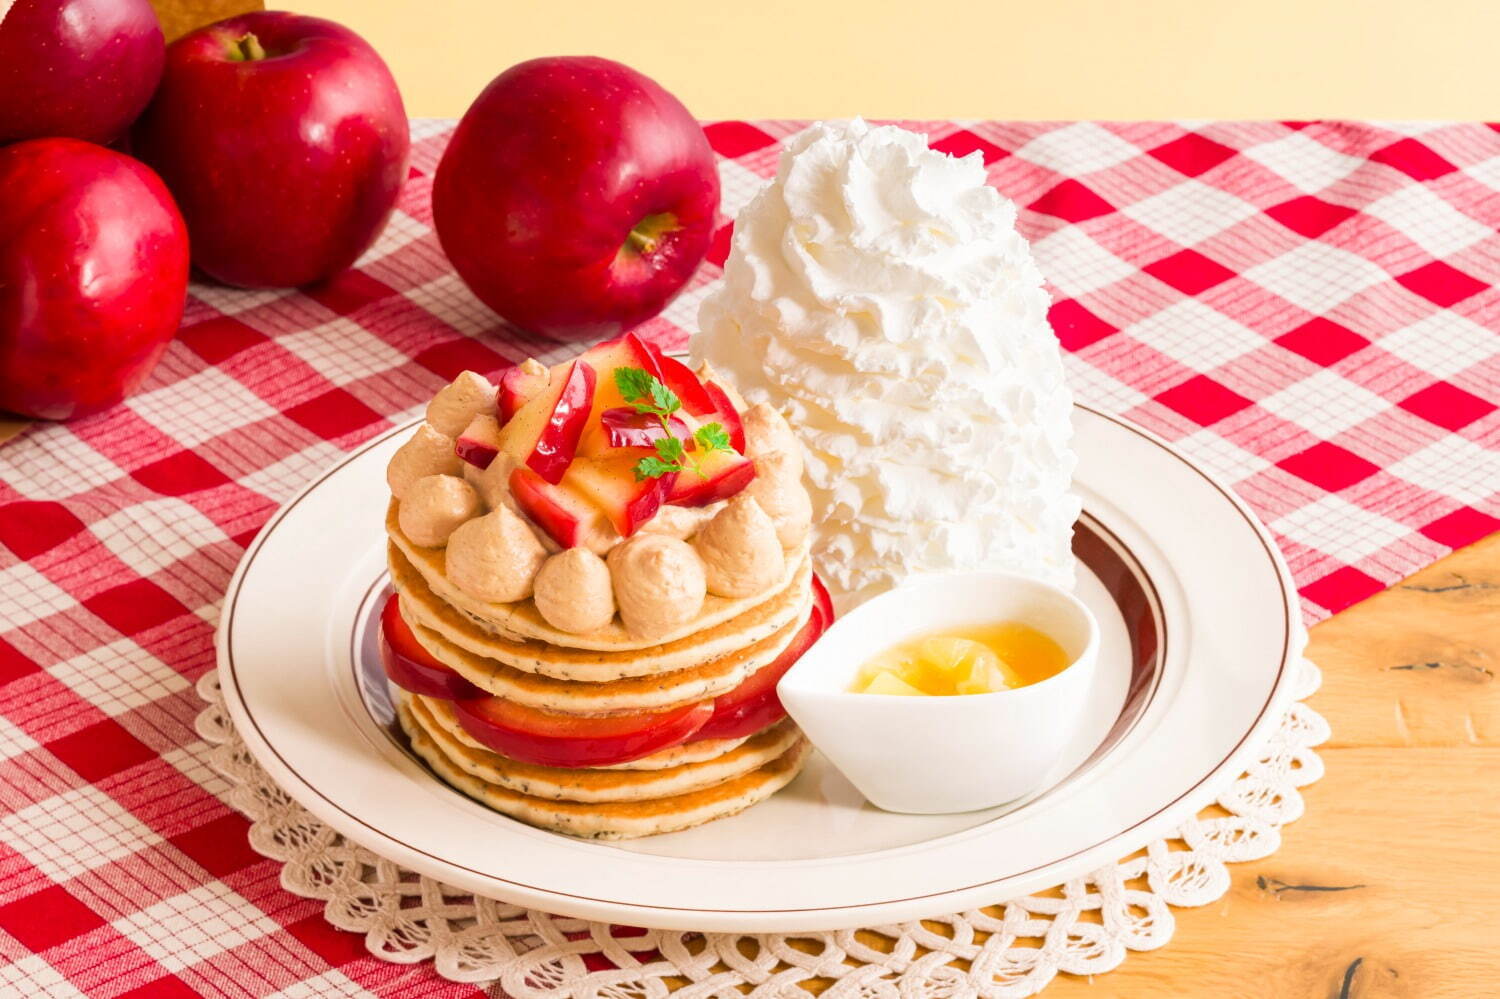 「りんごと紅茶のパンケーキ」1,650円